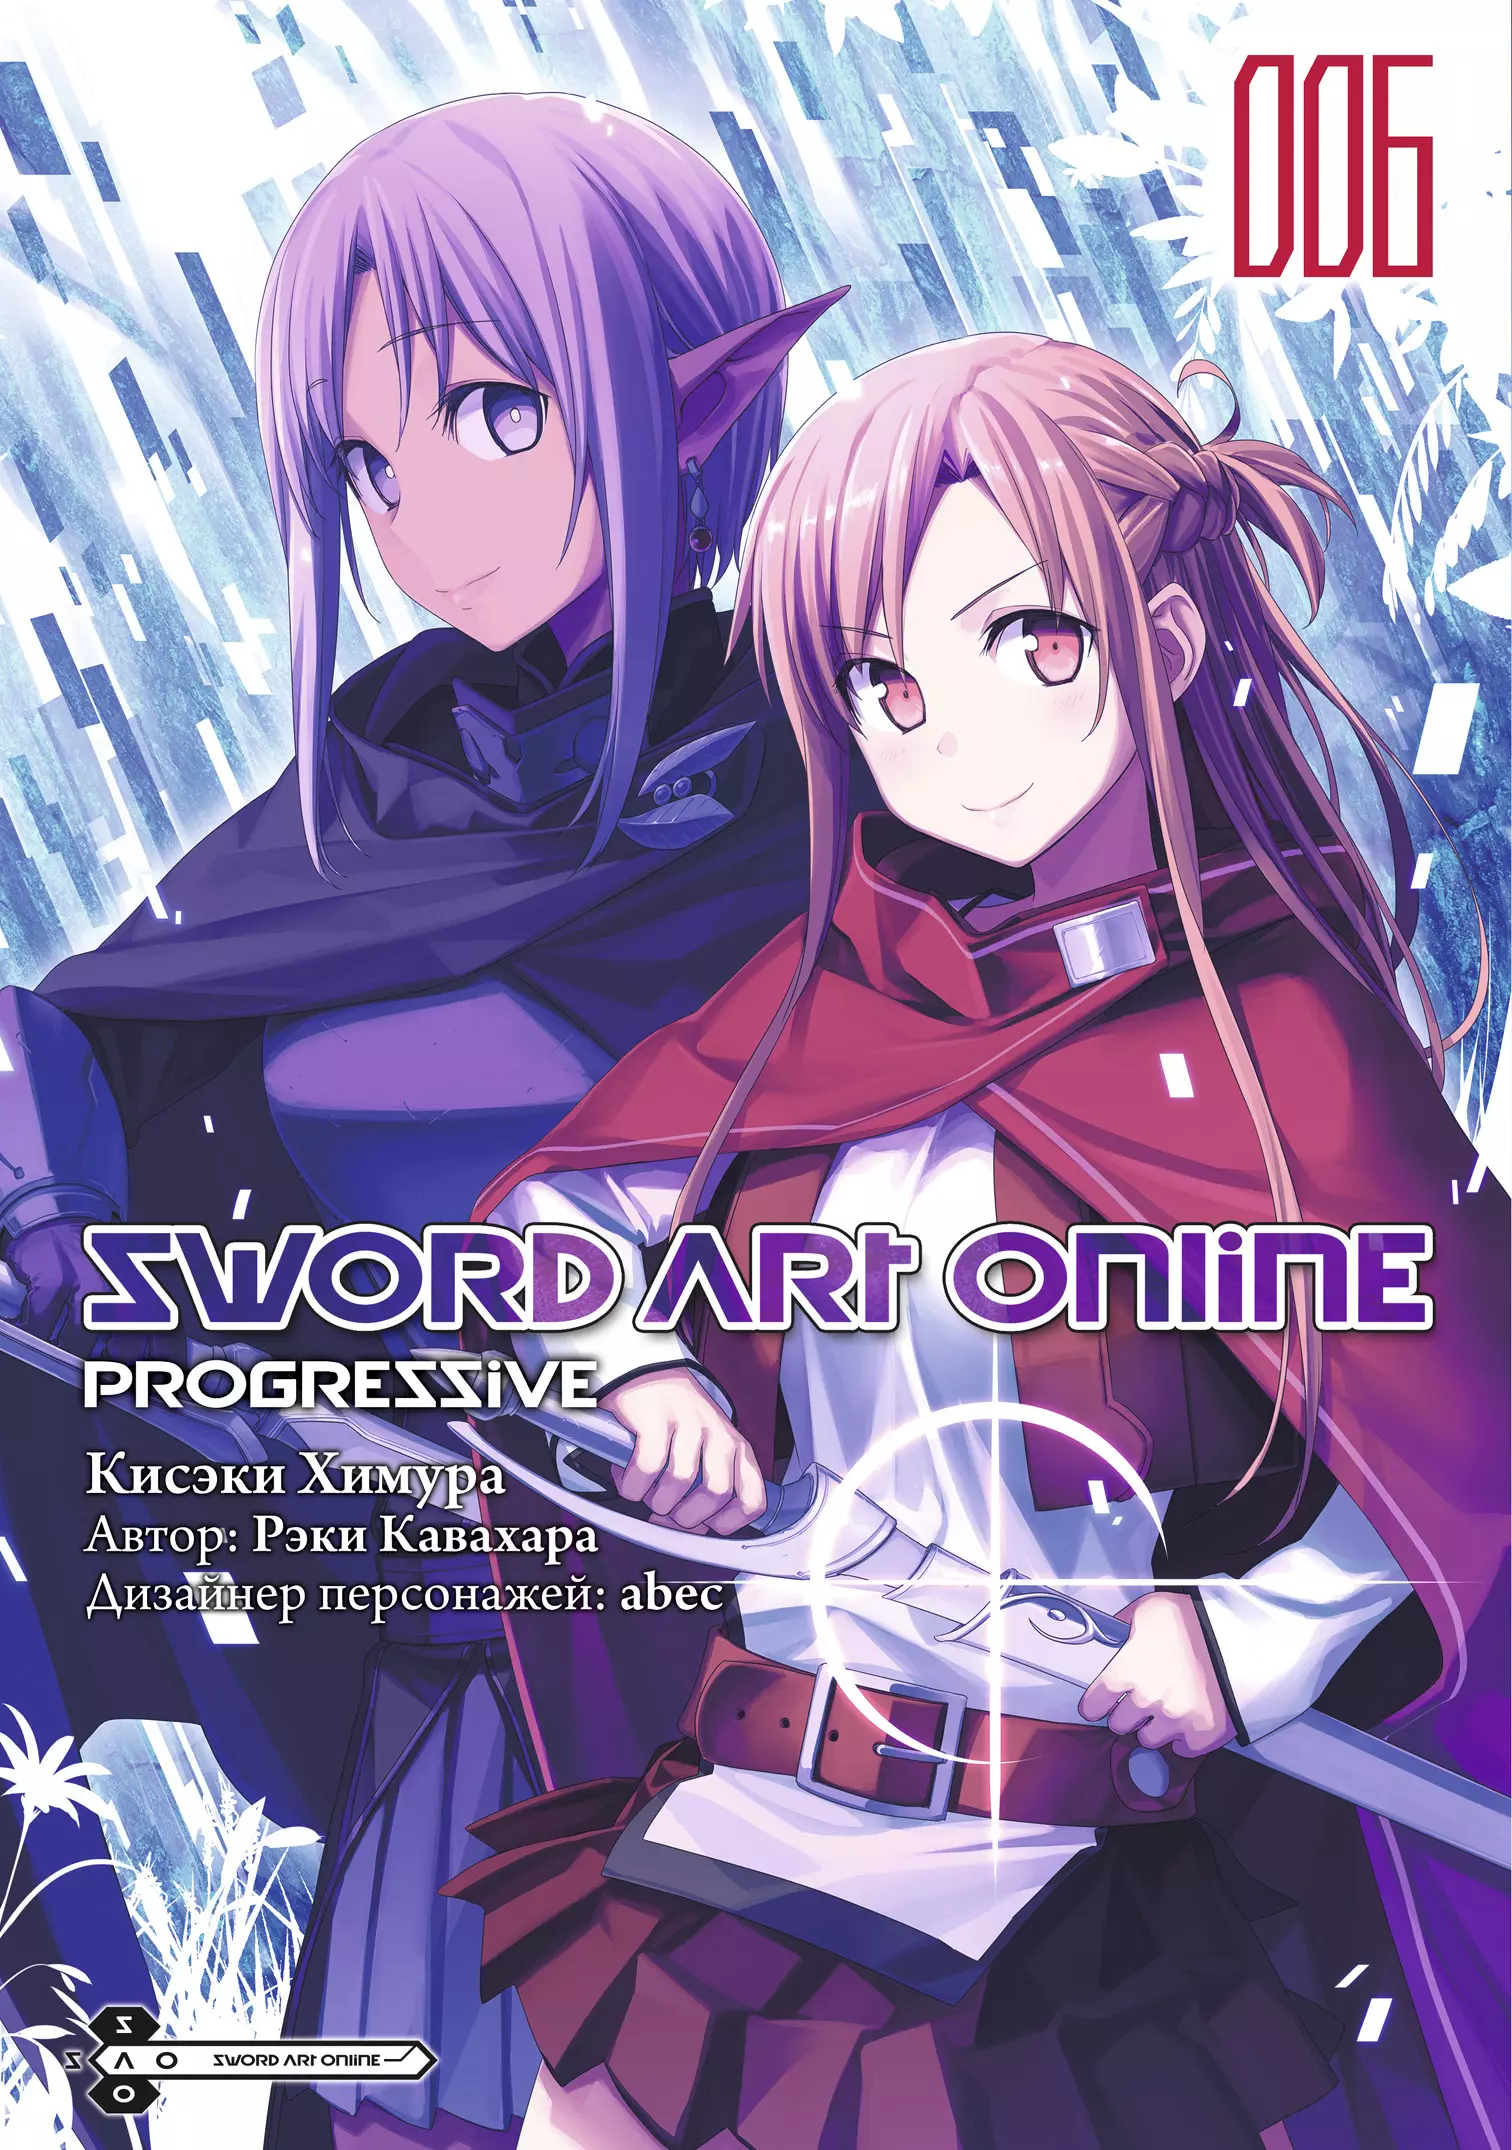 Кавахара Рэки Sword Art Online: Progressive. Том 6 кисэки химура рэки кавахара sword art online progressive том 3